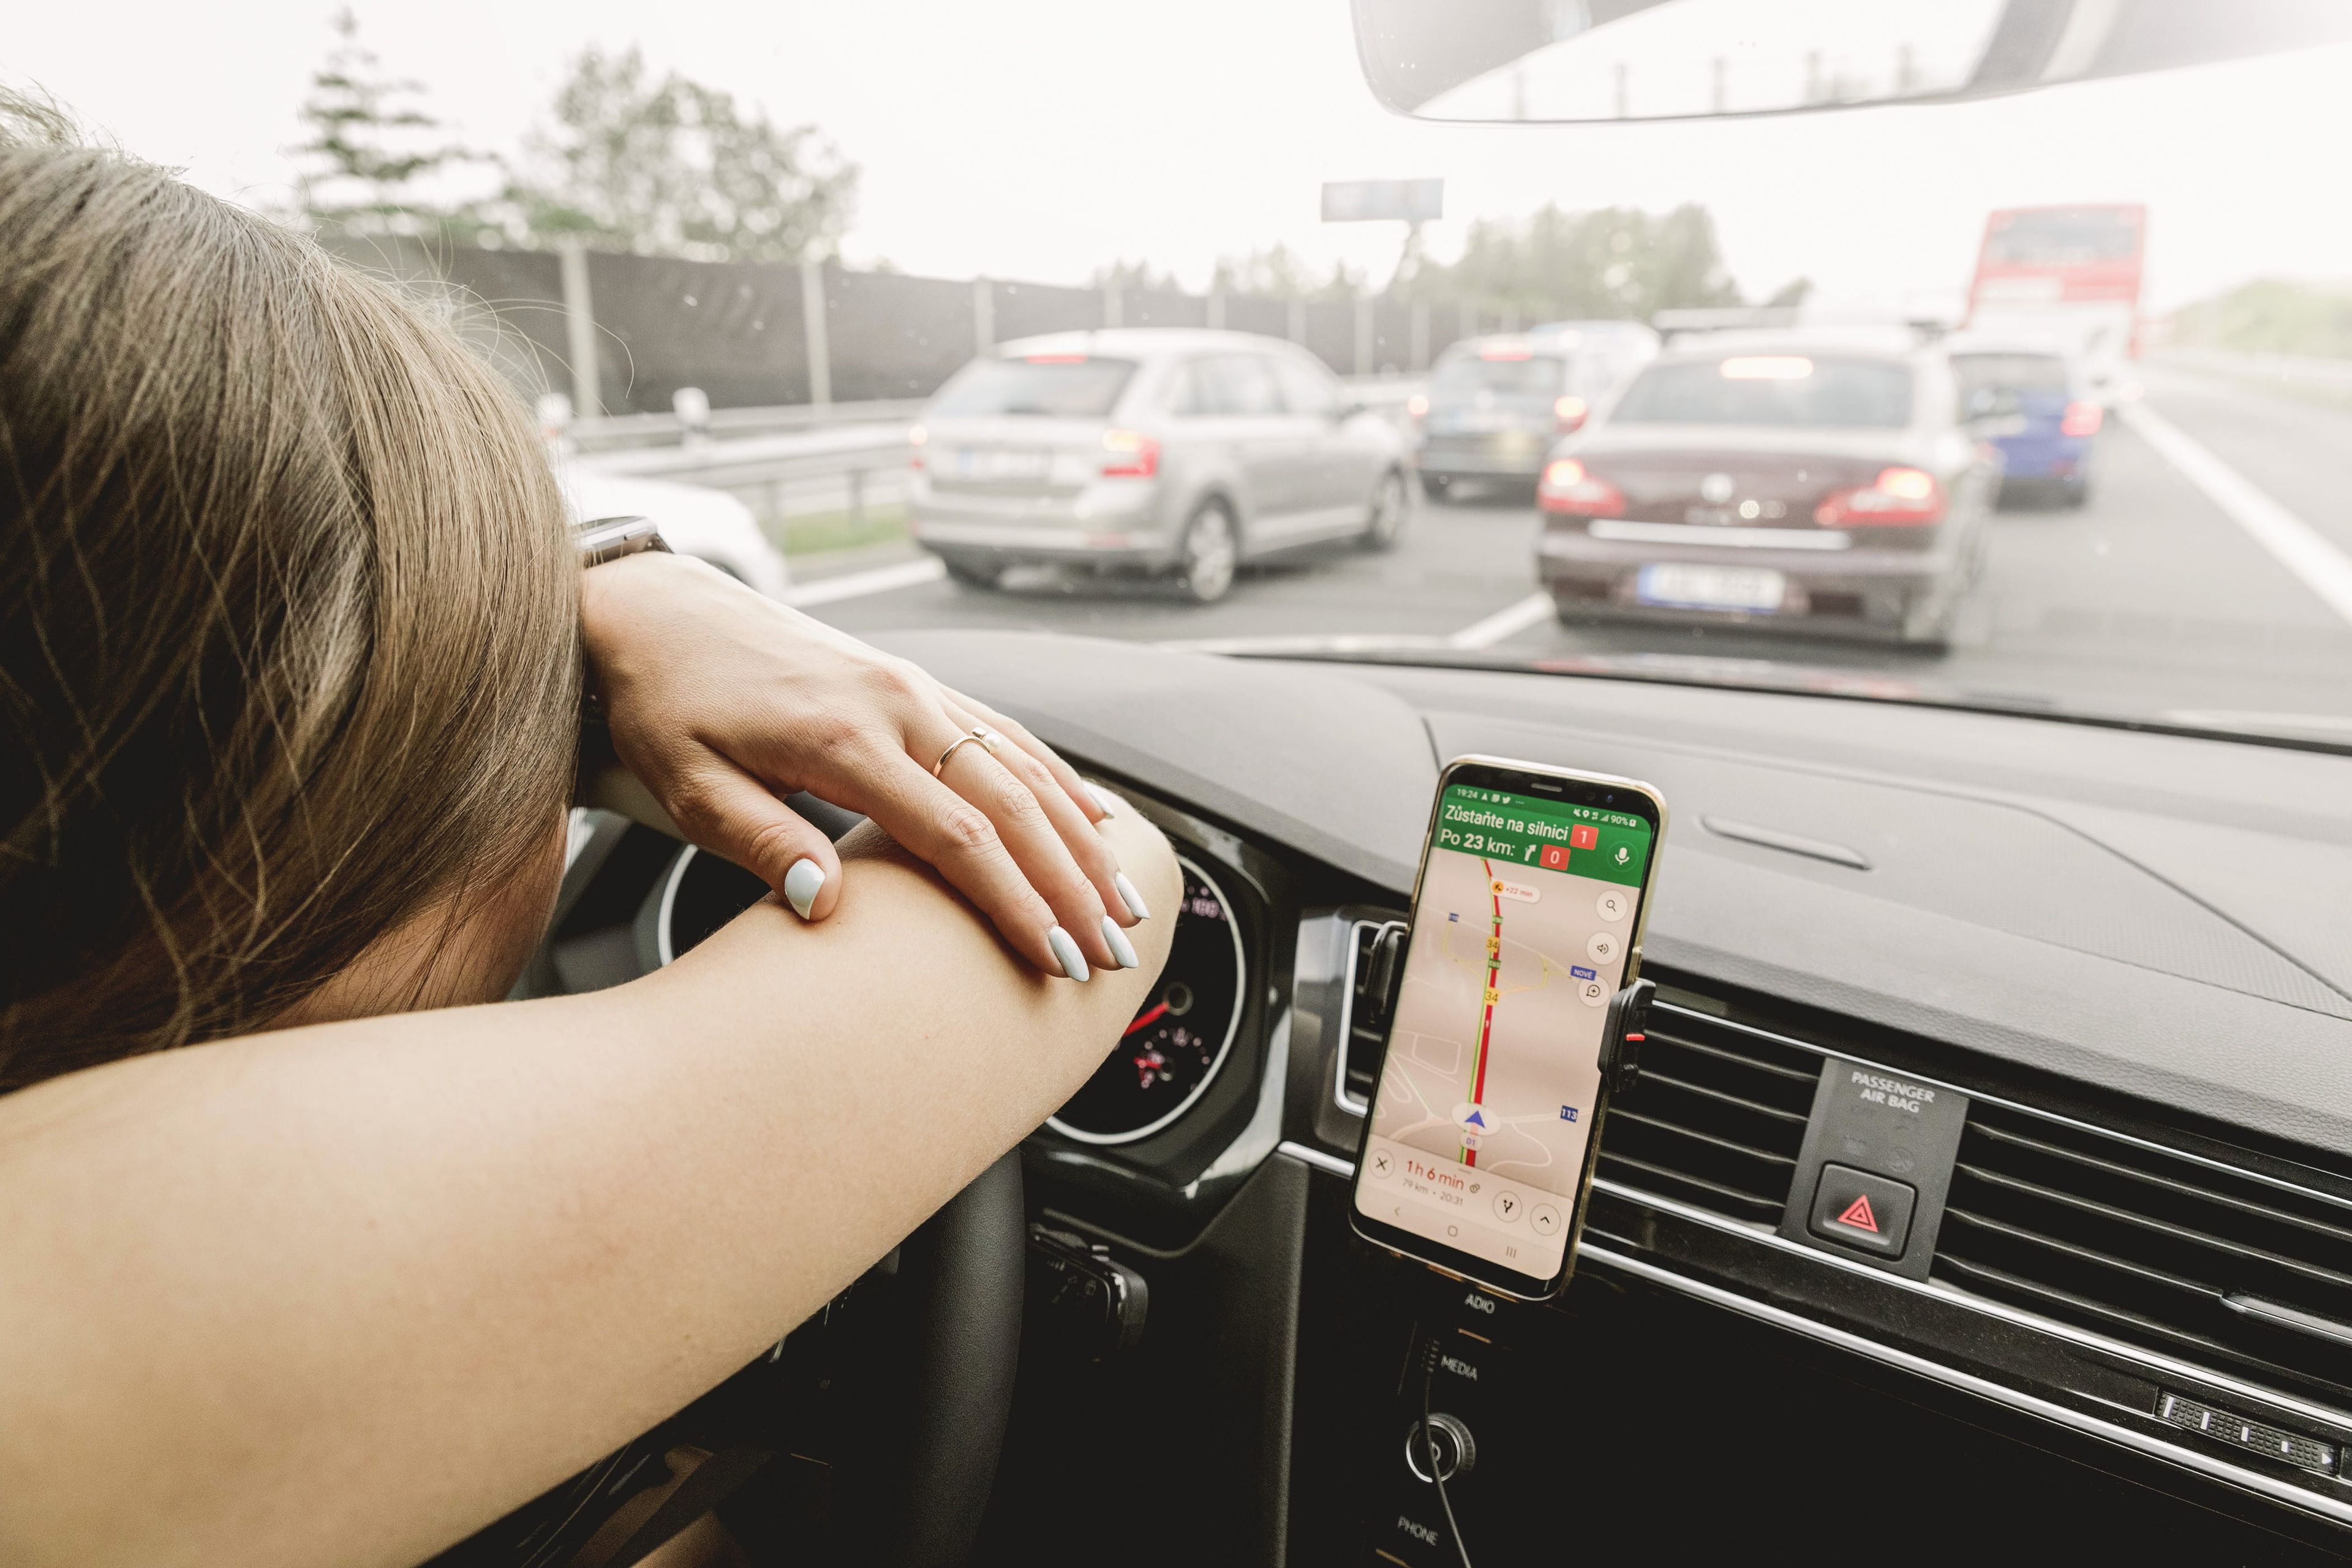 Waze ha llegado a un acuerdo con la aplicación de meditación Headspace para añadir contenidos de mindfulness a sus usuarios mientras viajan.